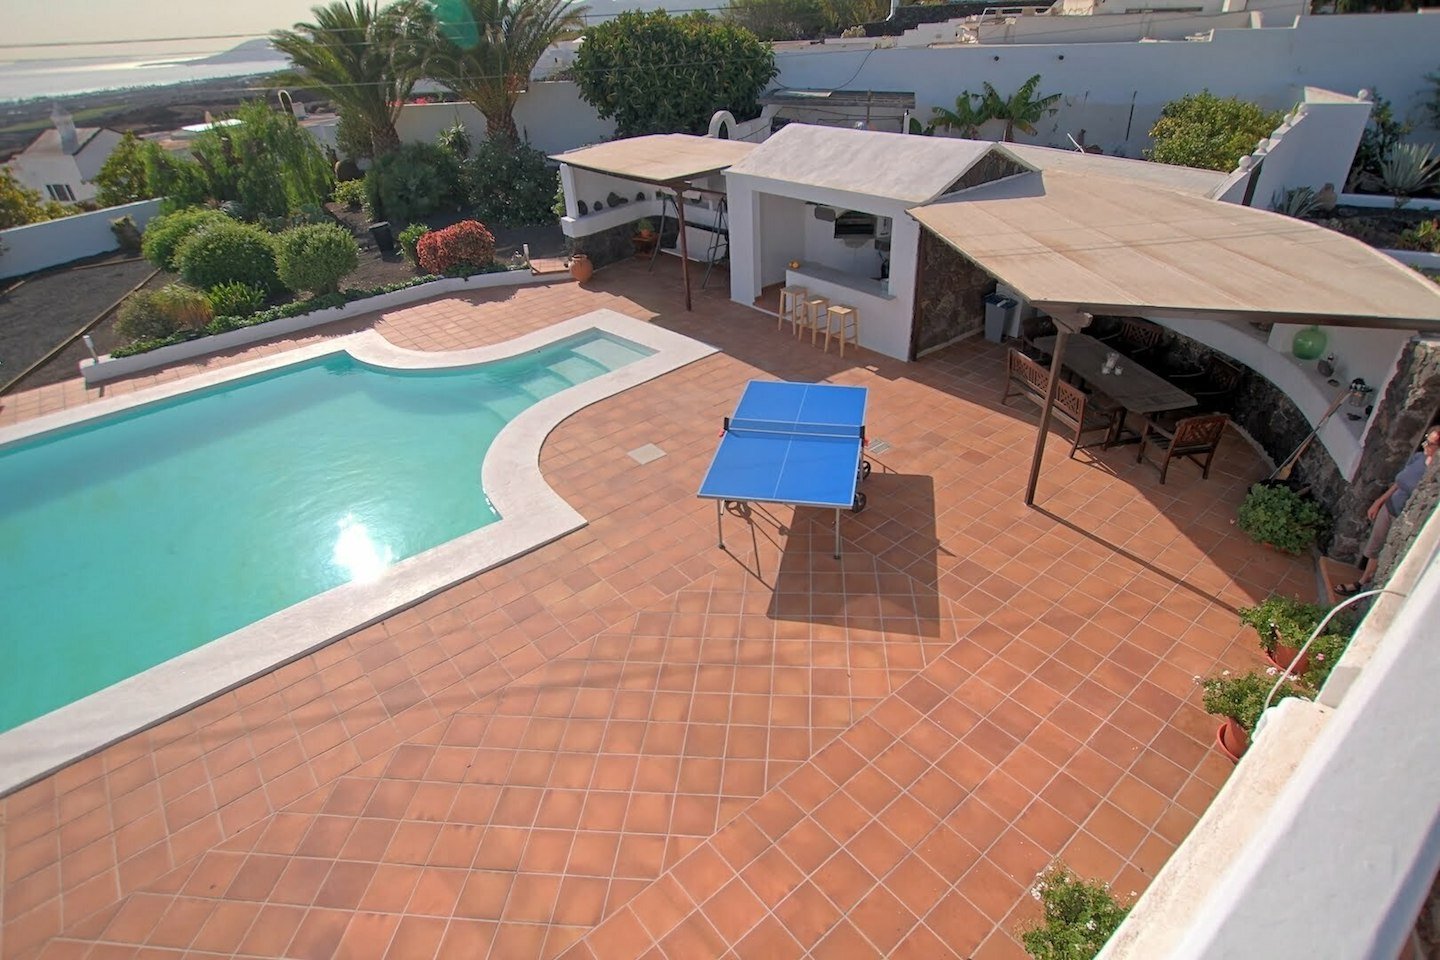 Villa Olivina - Lanzarote - Pool Area with Table Tennis